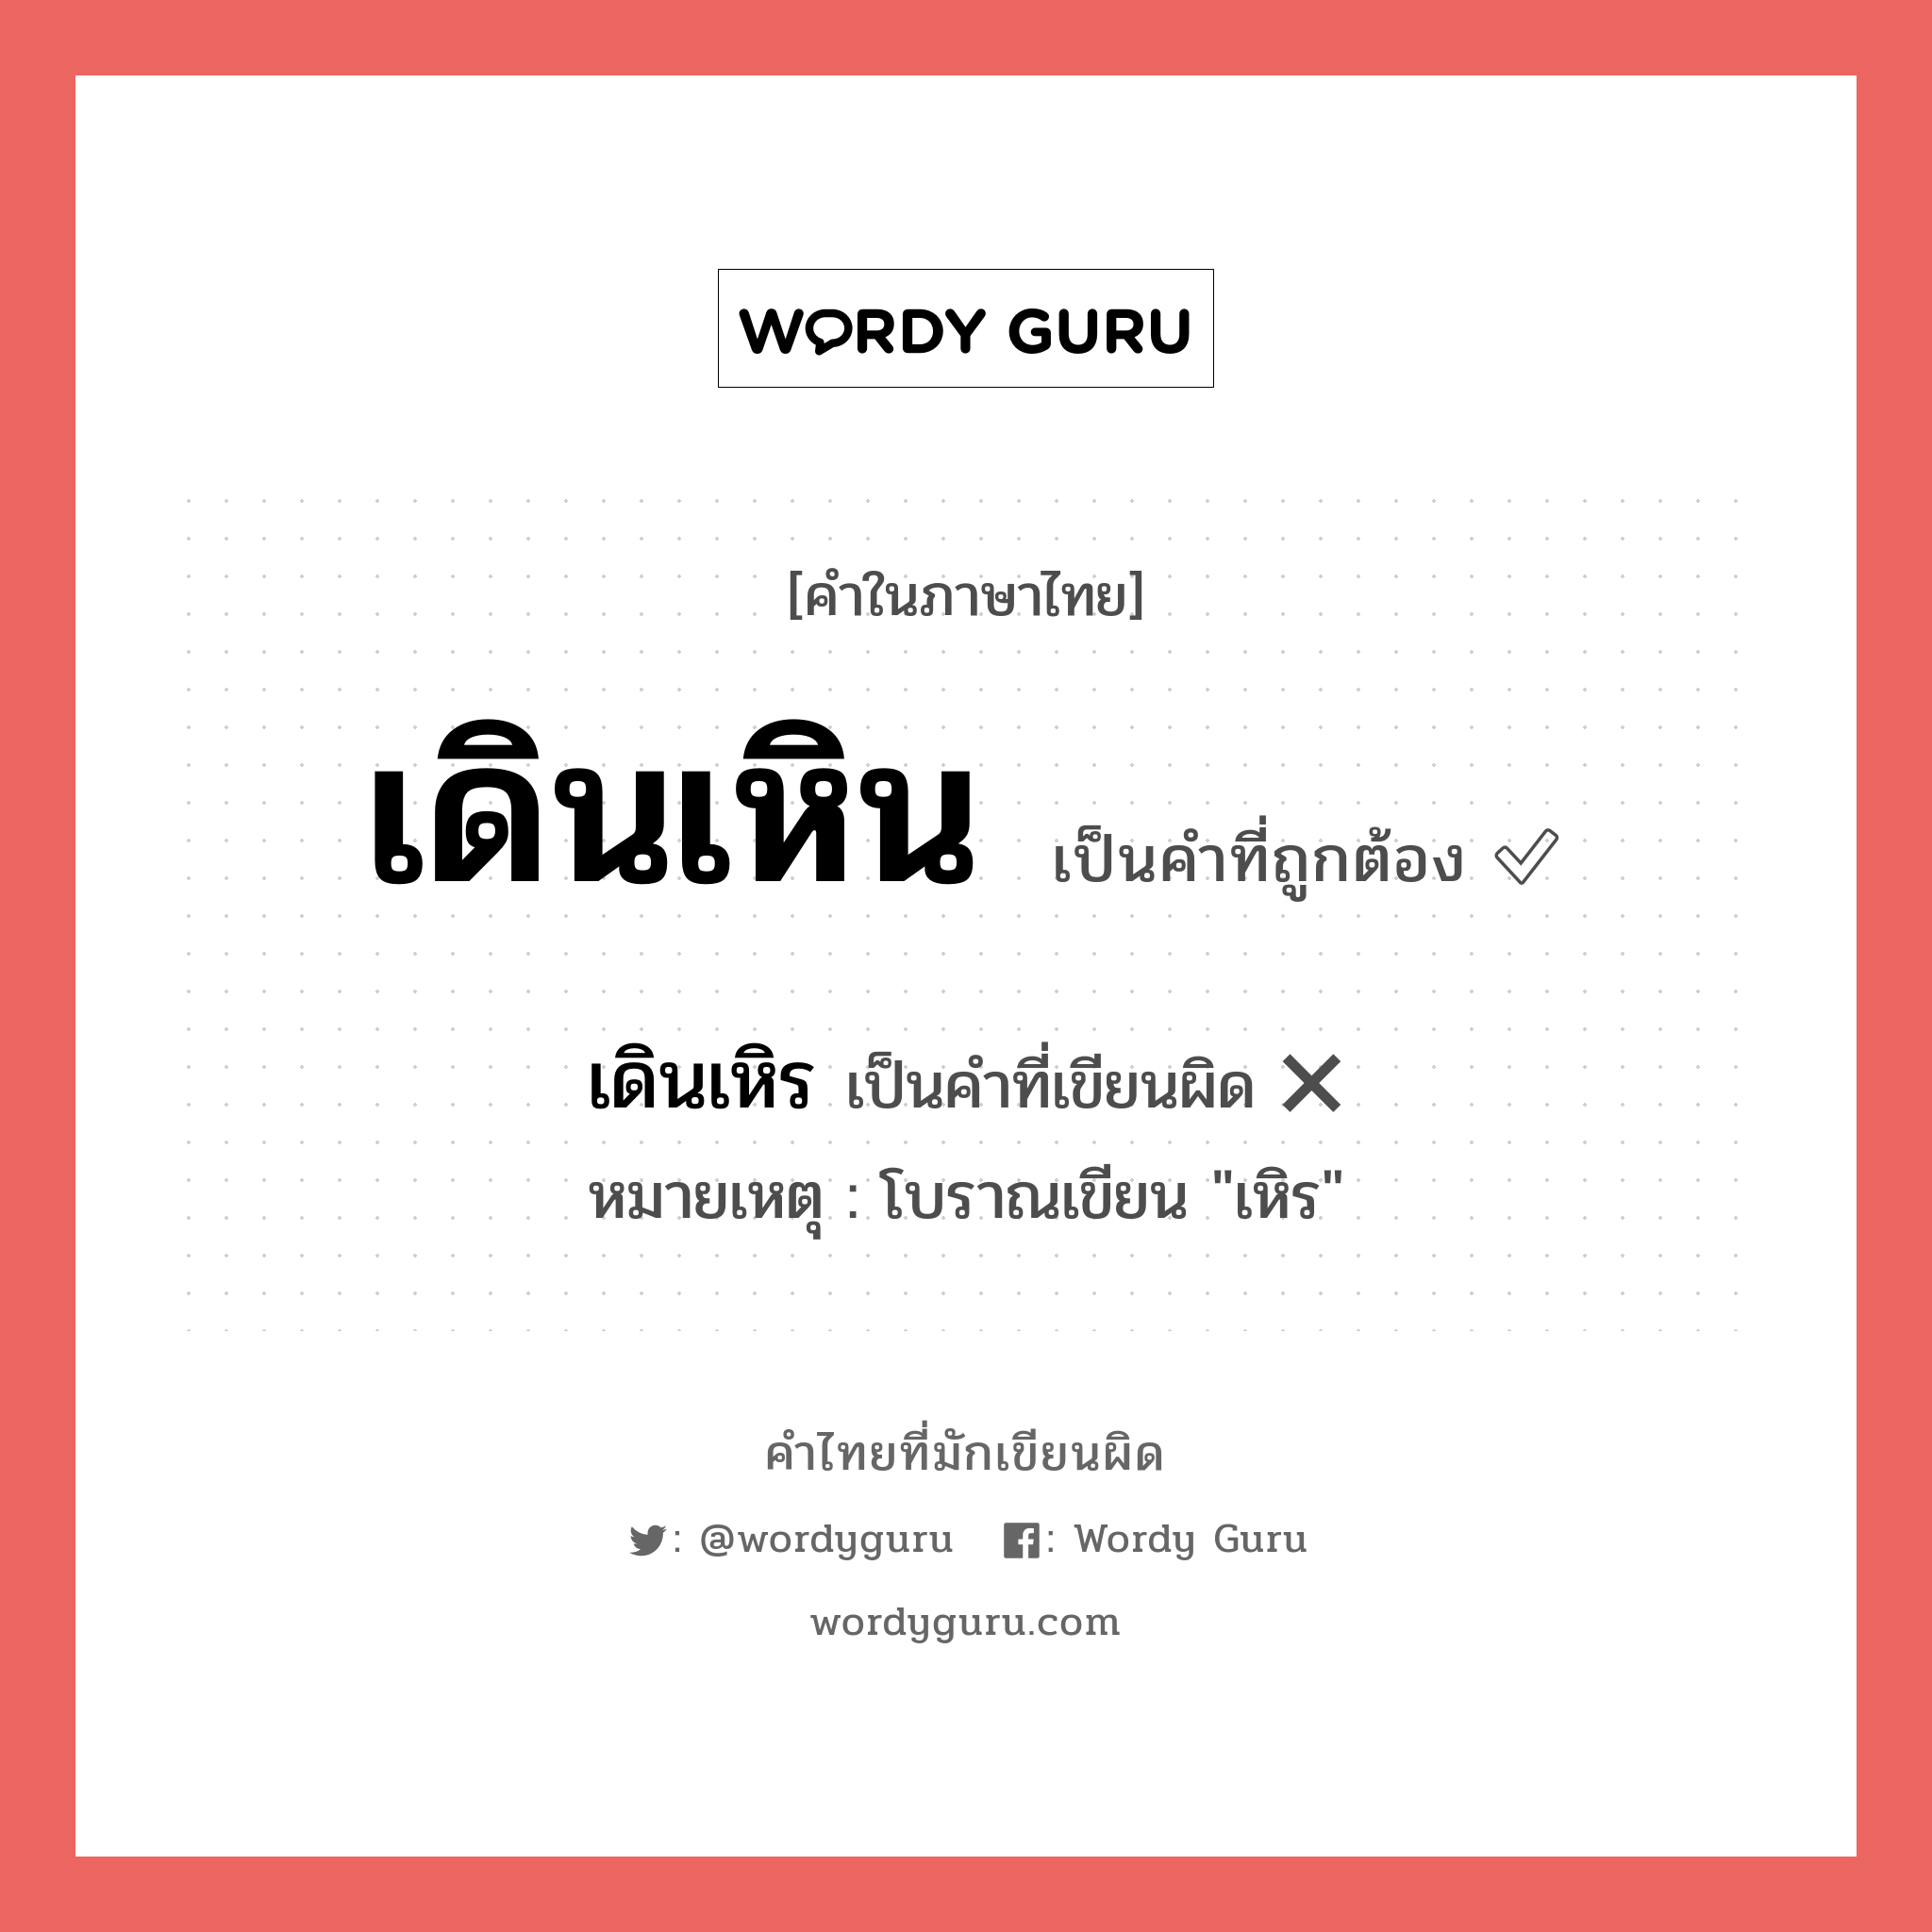 เดินเหิน หรือ เดินเหิร เขียนยังไง? คำไหนเขียนถูก?, คำในภาษาไทยที่มักเขียนผิด เดินเหิน คำที่ผิด ❌ เดินเหิร หมายเหตุ โบราณเขียน "เหิร"